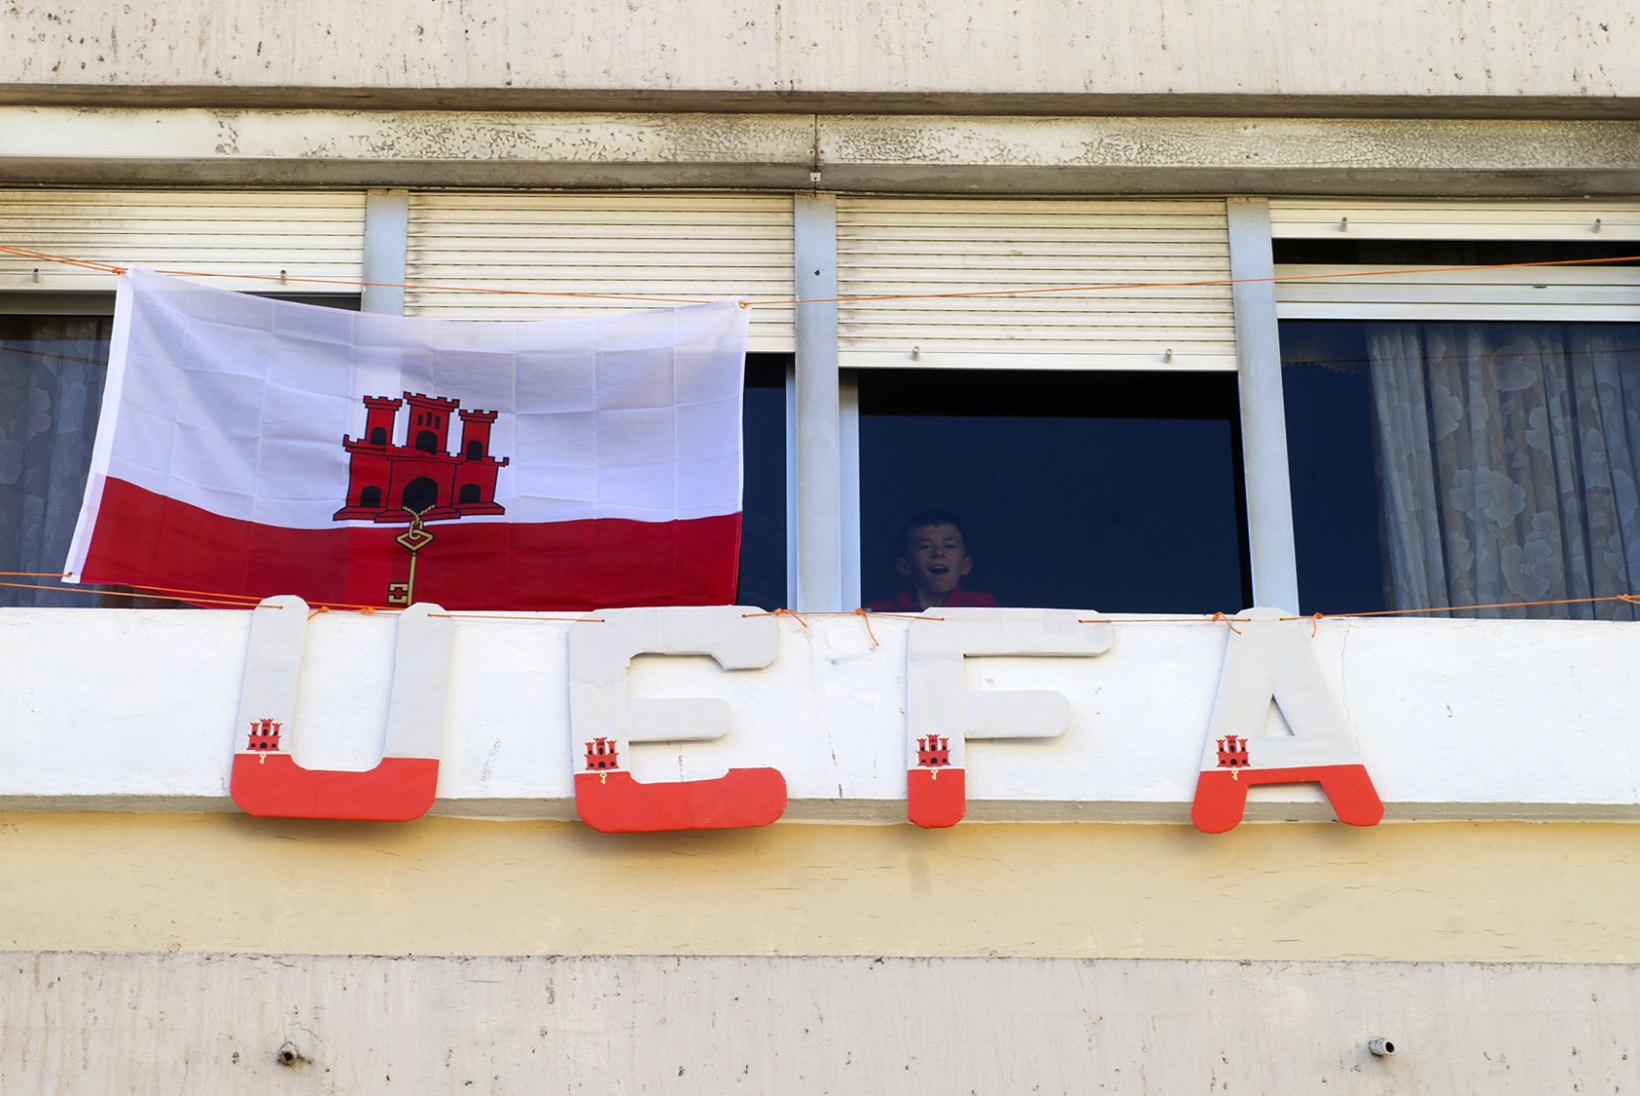 Gibraltari jalgpall on kummaline, kuid raha võib teenida rohkem kui Eestis